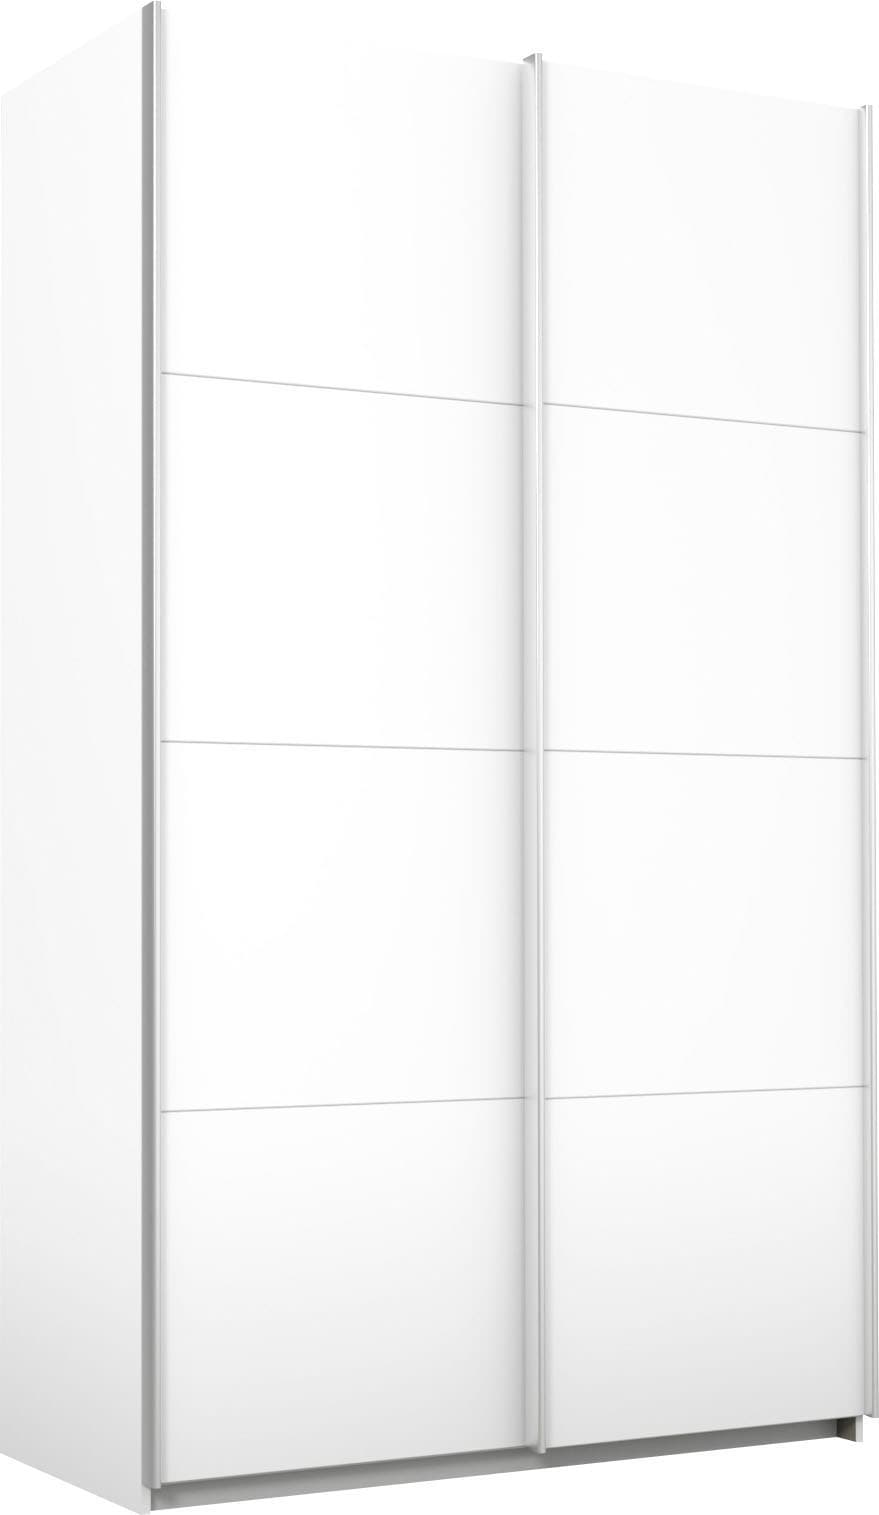 rauch Schwebetürenschrank »Quadra Kleiderschrank BESTSELLER Schrank Gaderobe«, mit Möglichkeit zur individuellen Frontgestaltung, leichtgängige Türen